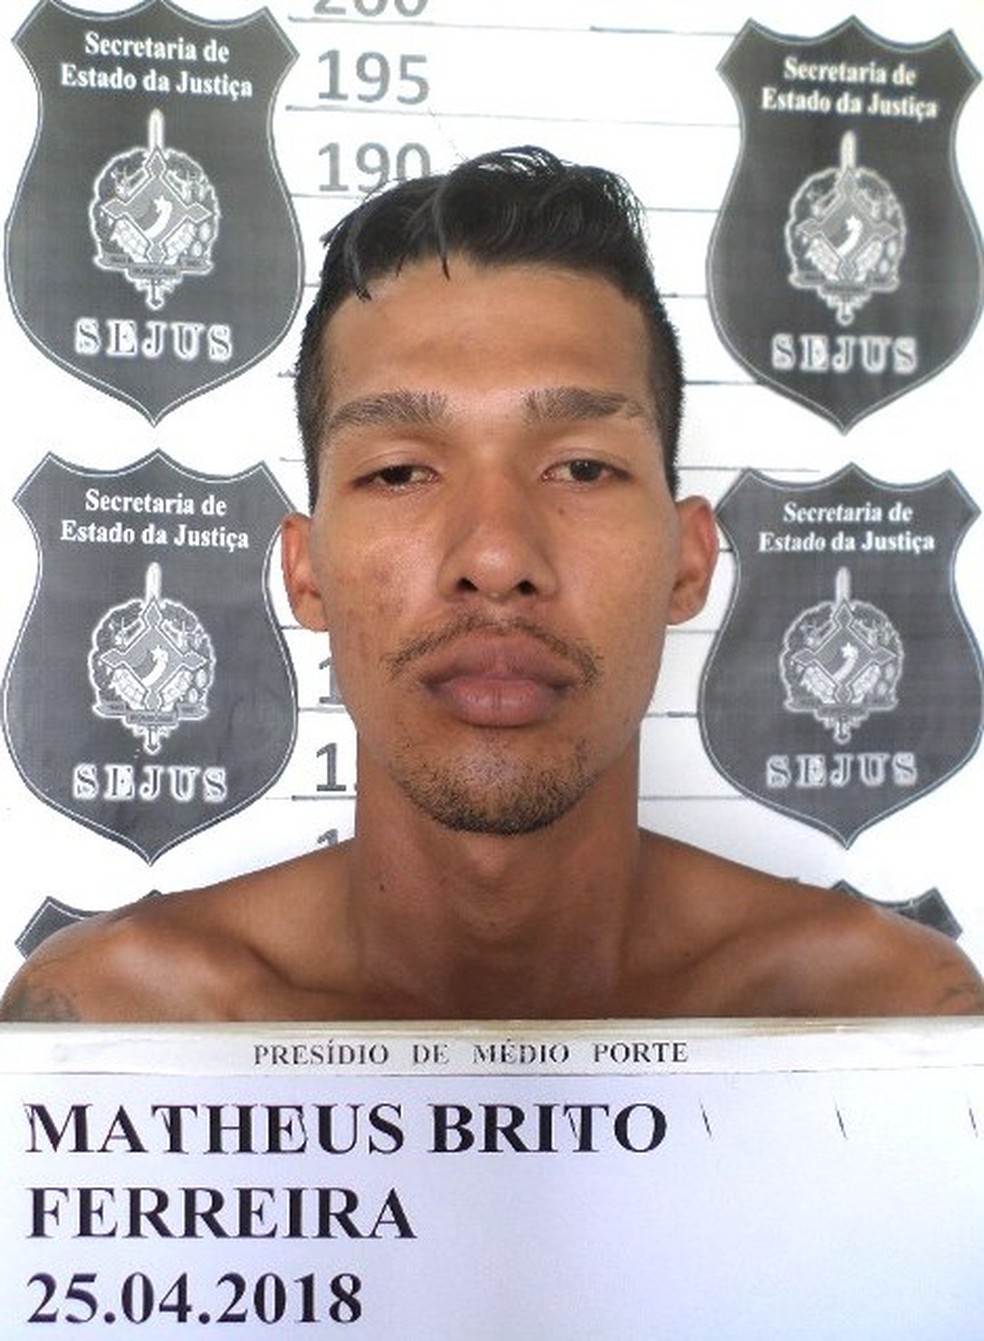 A vítima foi identificada como Matheus Brito Ferreira, 26 anos. — Foto: divulgação